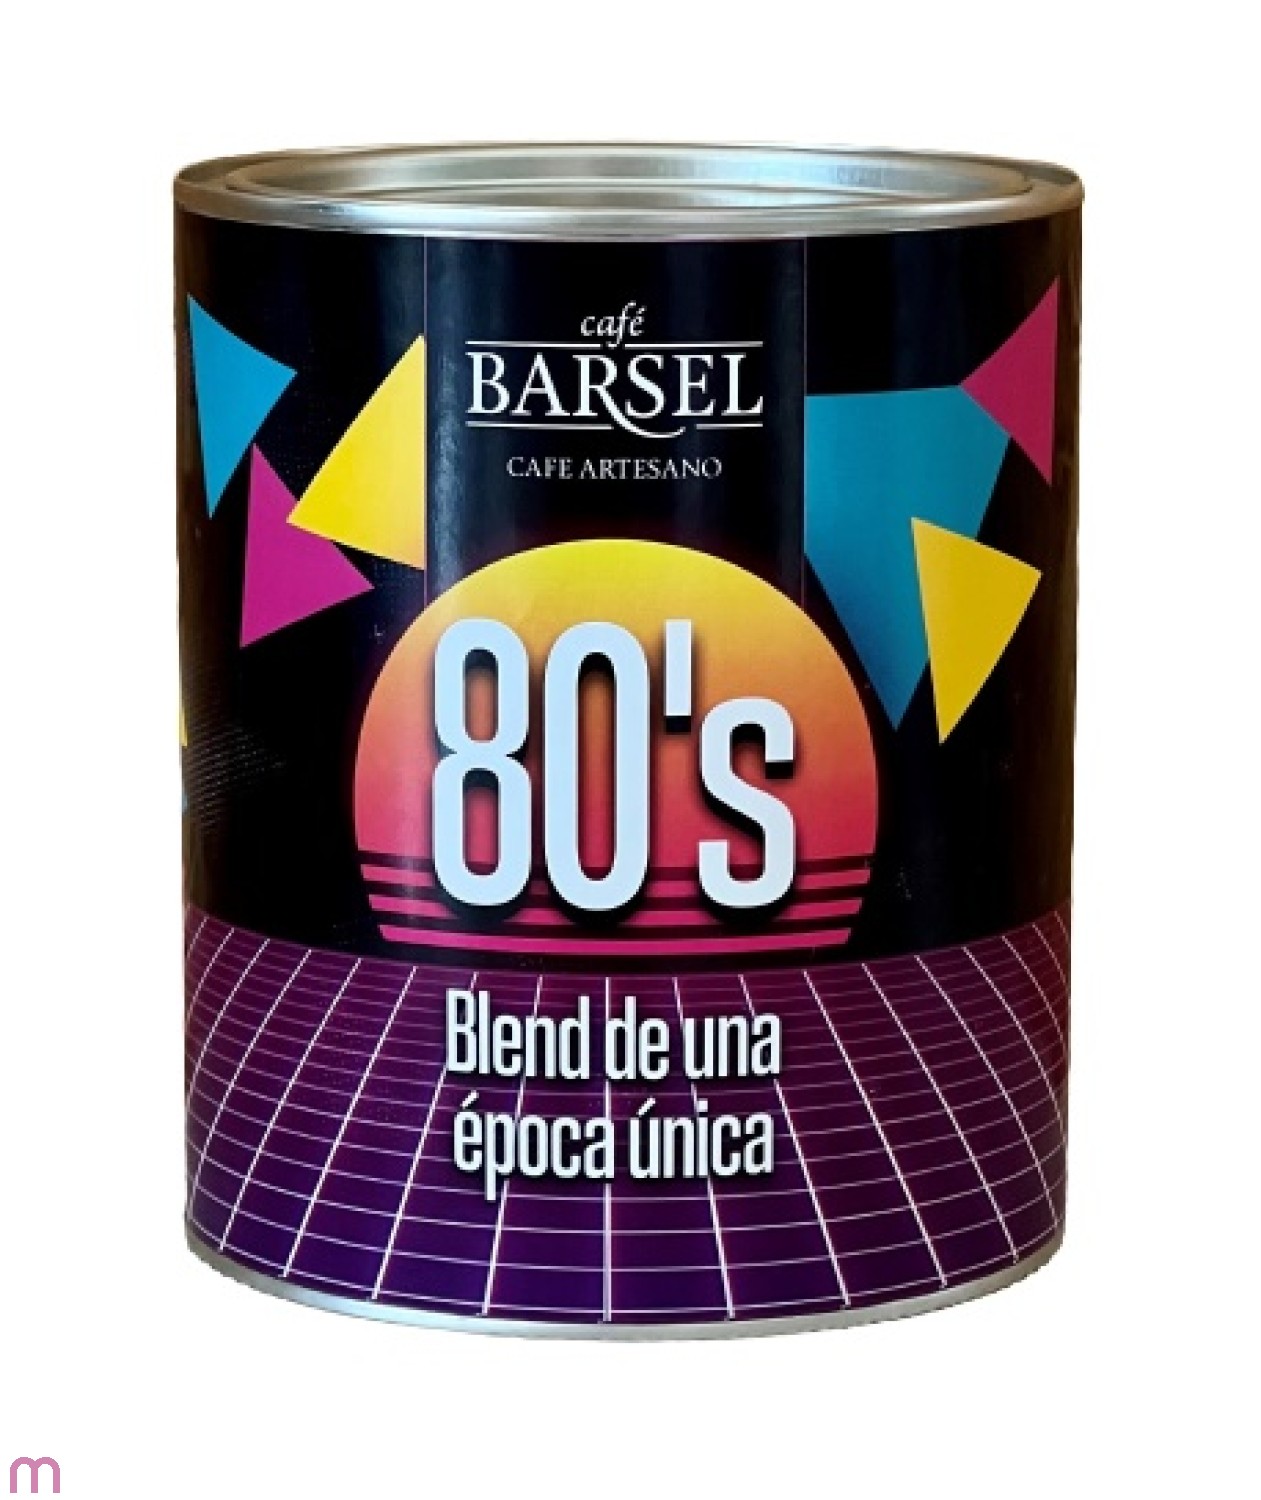 Cafe Barsel Blend 80,s 500 g ganze Bohne